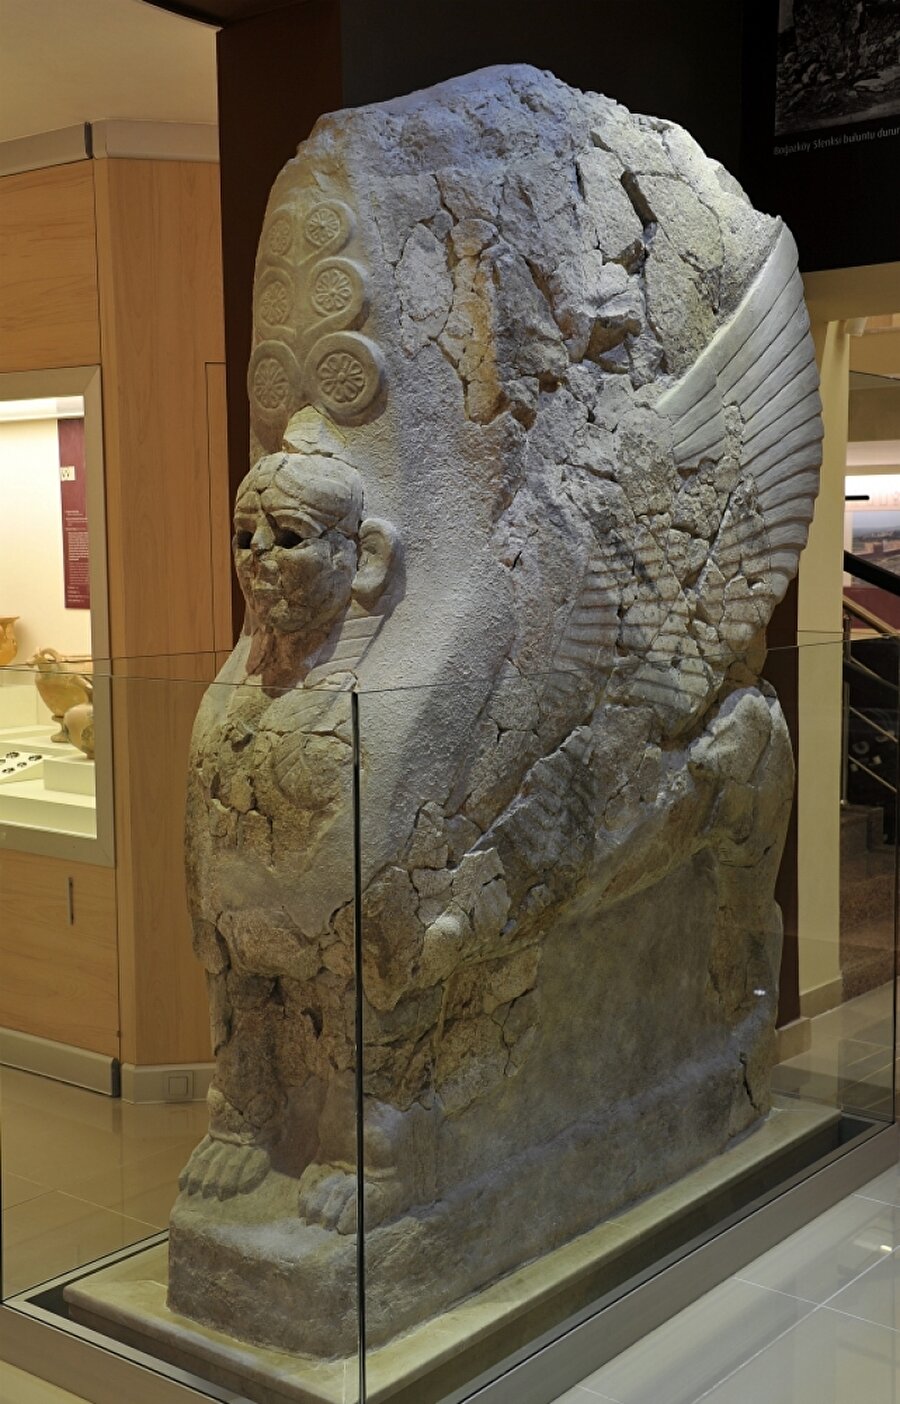 Boğazköy Sfenksi
M.Ö. 1.300 yıllarına, Hitit İmparatorluk Dönemine ait Sfenks, yaklaşık 3.300 yaşında. Kireçtaşından yapılan eser 2,5 metre boyunda, 1,75 metre eninde ve 1.700 kg. ağırlığında.

1906-1912 yılları arasında Boğazköy'de, Müze-i Hümayun başkanlığında ve Alman heyet üyelerinin de katılımıyla yapılan kazılarda Hitit Kraliyet Arşivine ait 10.400 civarında tablet ve iki sfenks bulundu. 

Yapılan anlaşma sonucu, tabletler ve sfenksler, temizleme, onarım ve yayın çalışmaları için -iade edilmek üzere- Alman kazı ekibi üyeleri tarafından Berlin'e götürüldü. Eserlerin bir kısmı iade edildi ancak Boğazköy Sfenksi Almanya'da kaldı. 1938'e kadar eserin iadesi için görüşmeler devam etti. Ancak II. Dünya Savaşı'nın başlaması ve savaş sonrası Berlin Müzelerinin Doğu Almanya'da kalması nedeniyle ilişkiler kesildi. Türkiye, 1973 yılında Doğu Almanya'yı resmi olarak tanıdı ve 1974'te sfenksin iadesine ilişkin görüşmeler yeniden başladı. 

Yıllar süren temasların ardından, 2011'de Ankara ve Berlin'de gerçekleştirilen toplantılar sonucu, anlaşma sağlandı ve Temmuz 2011'de eser iade edildi. Sfenks, diğer eşiyle birlikte Boğazköy Müzesinde sergilenmeye başlandı. 